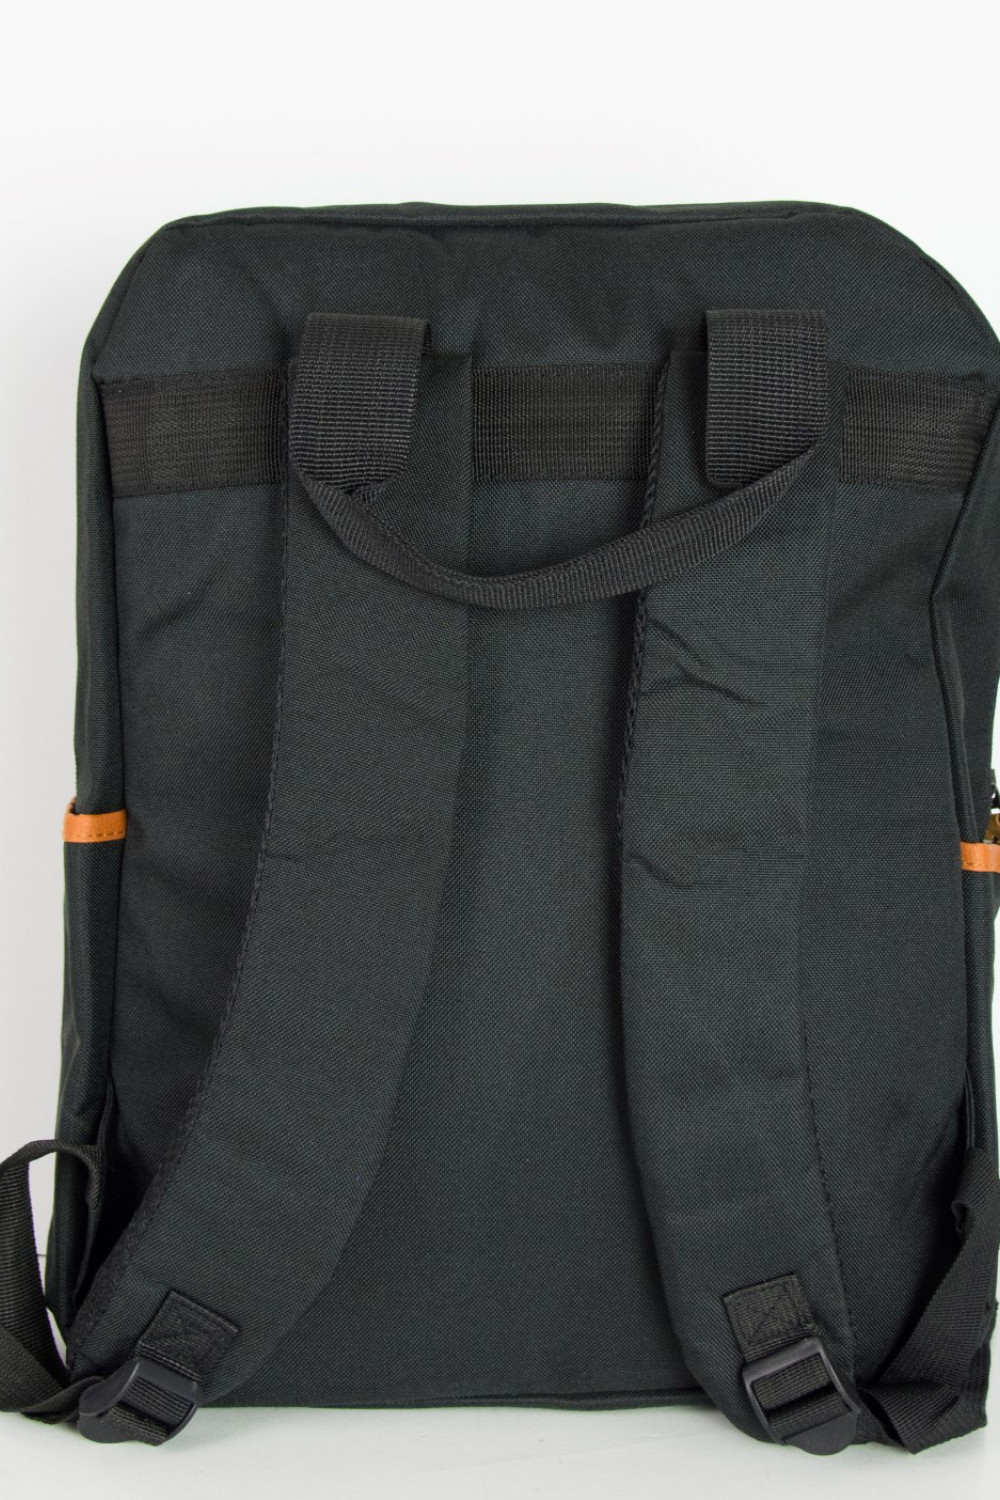 Ανδρικό μαύρο στρογγυλό Backpack μονόχρωμο 1205G